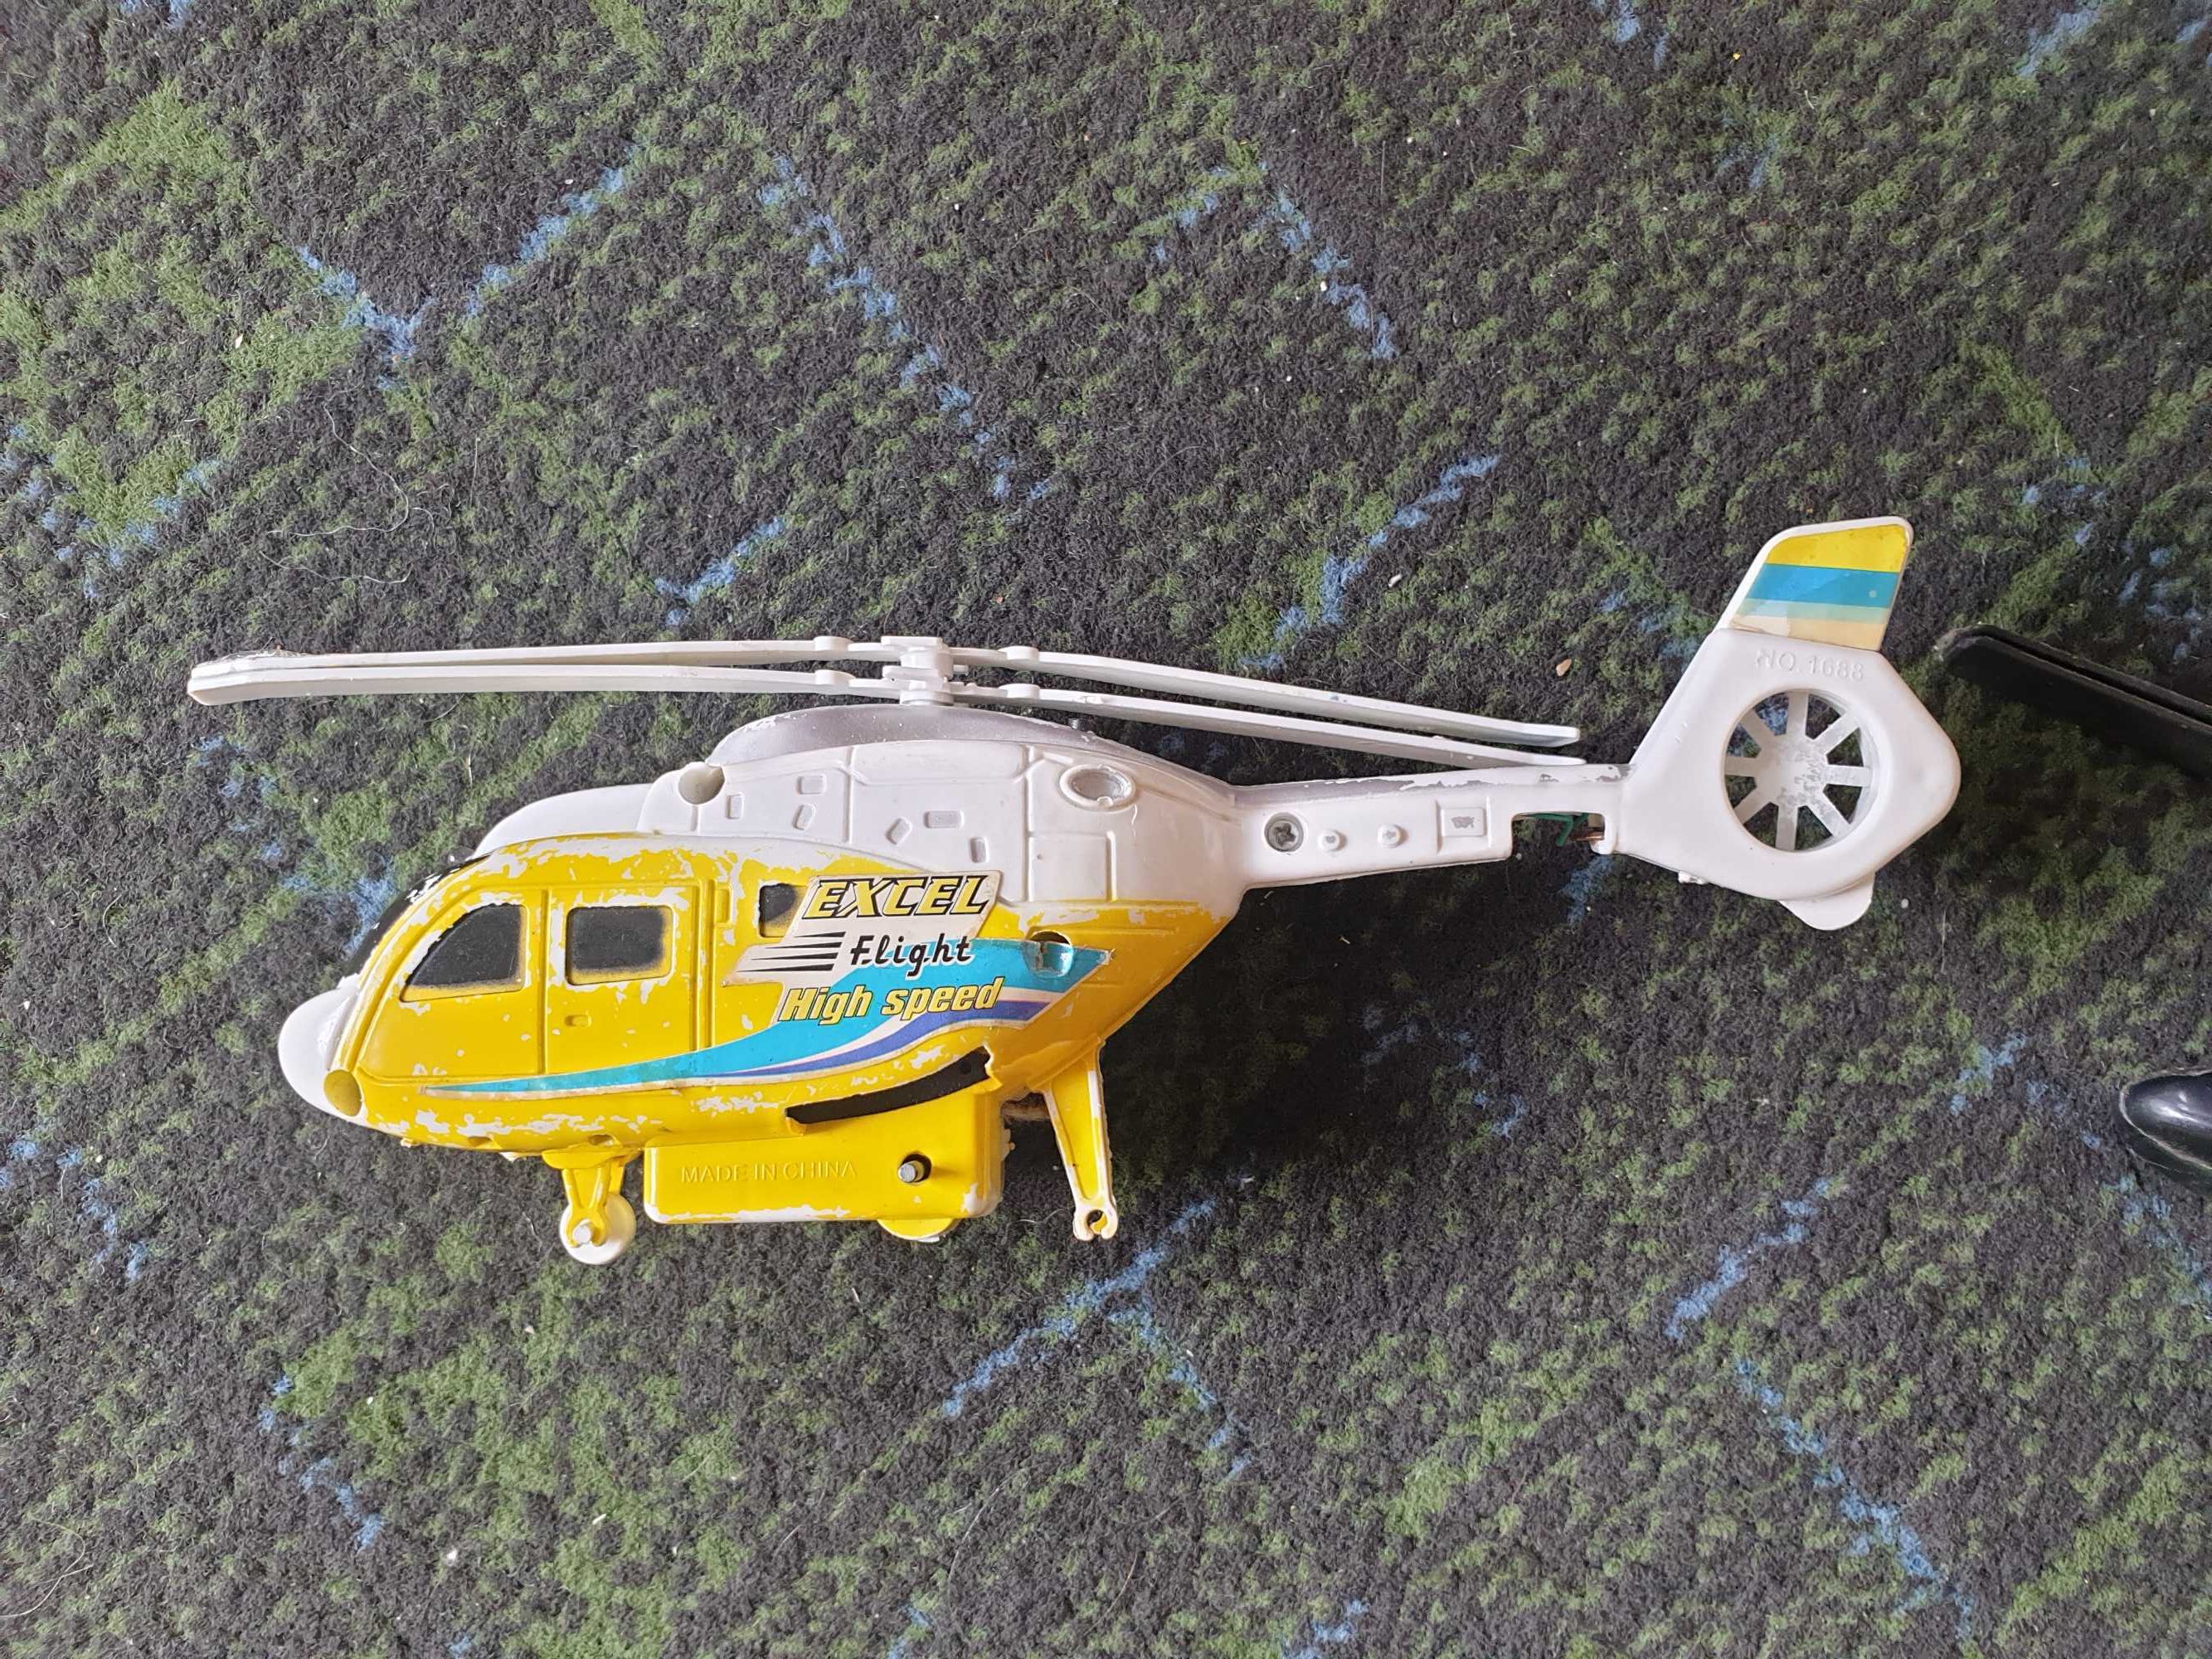 Zabawki helikopter x2 odrzutowiec razem 3 sztuki